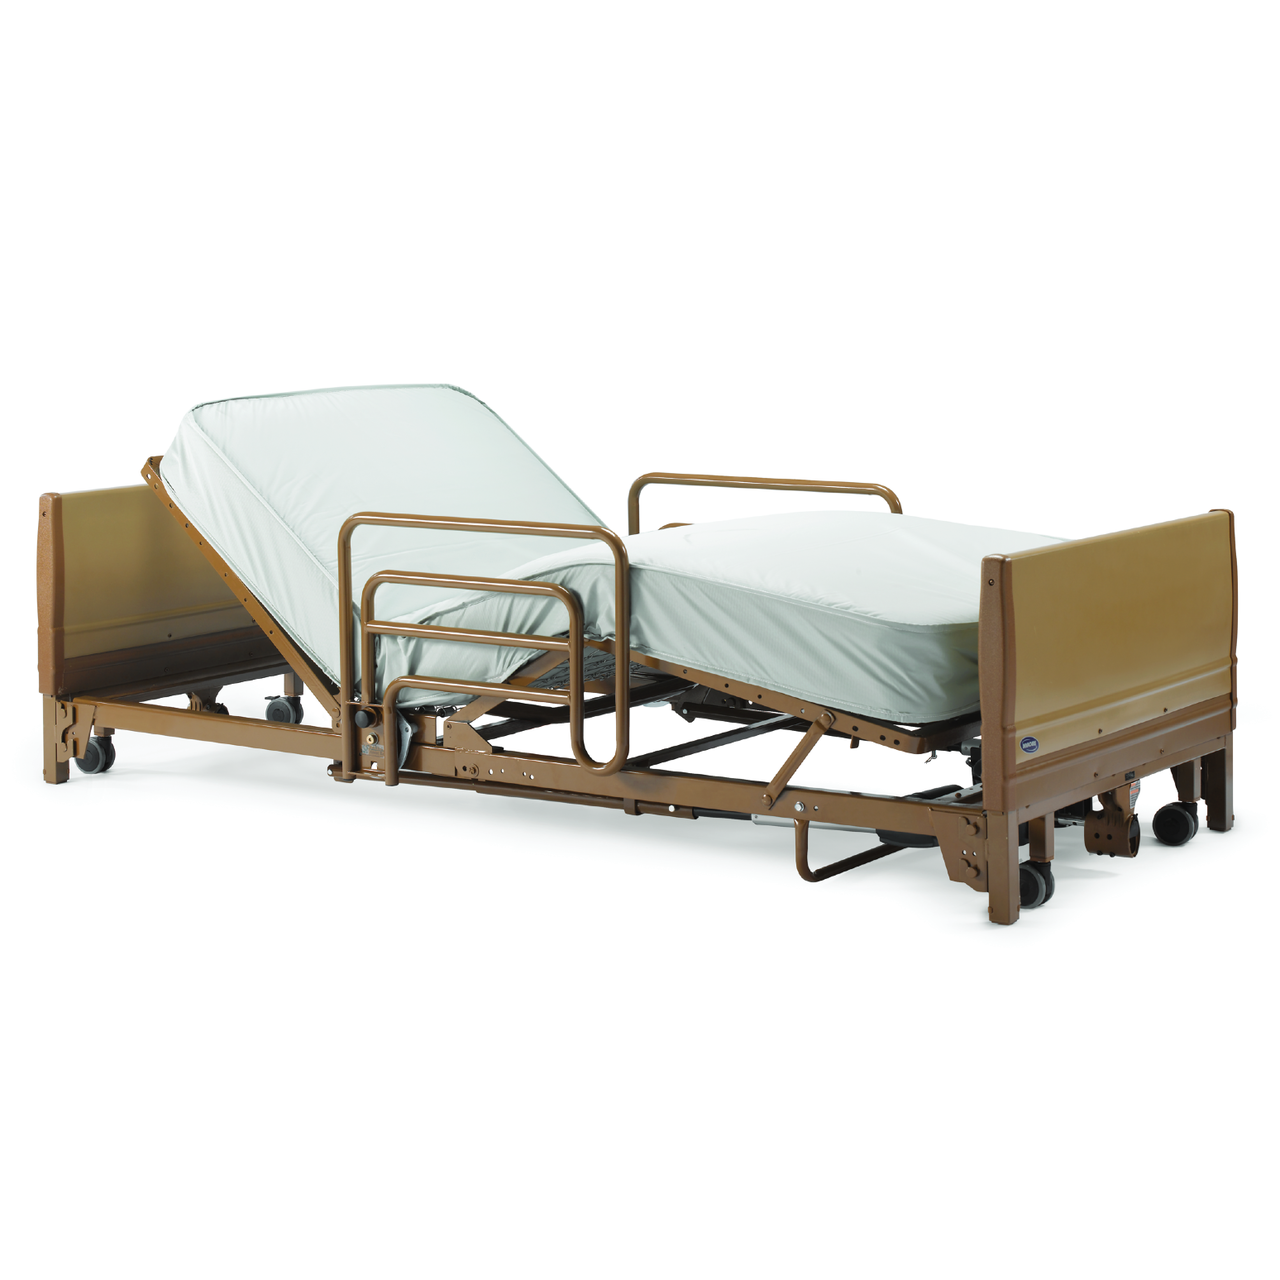 Hi-Lo SL Complete Adjustable Bed - Shop Atlantic Healthcare Products